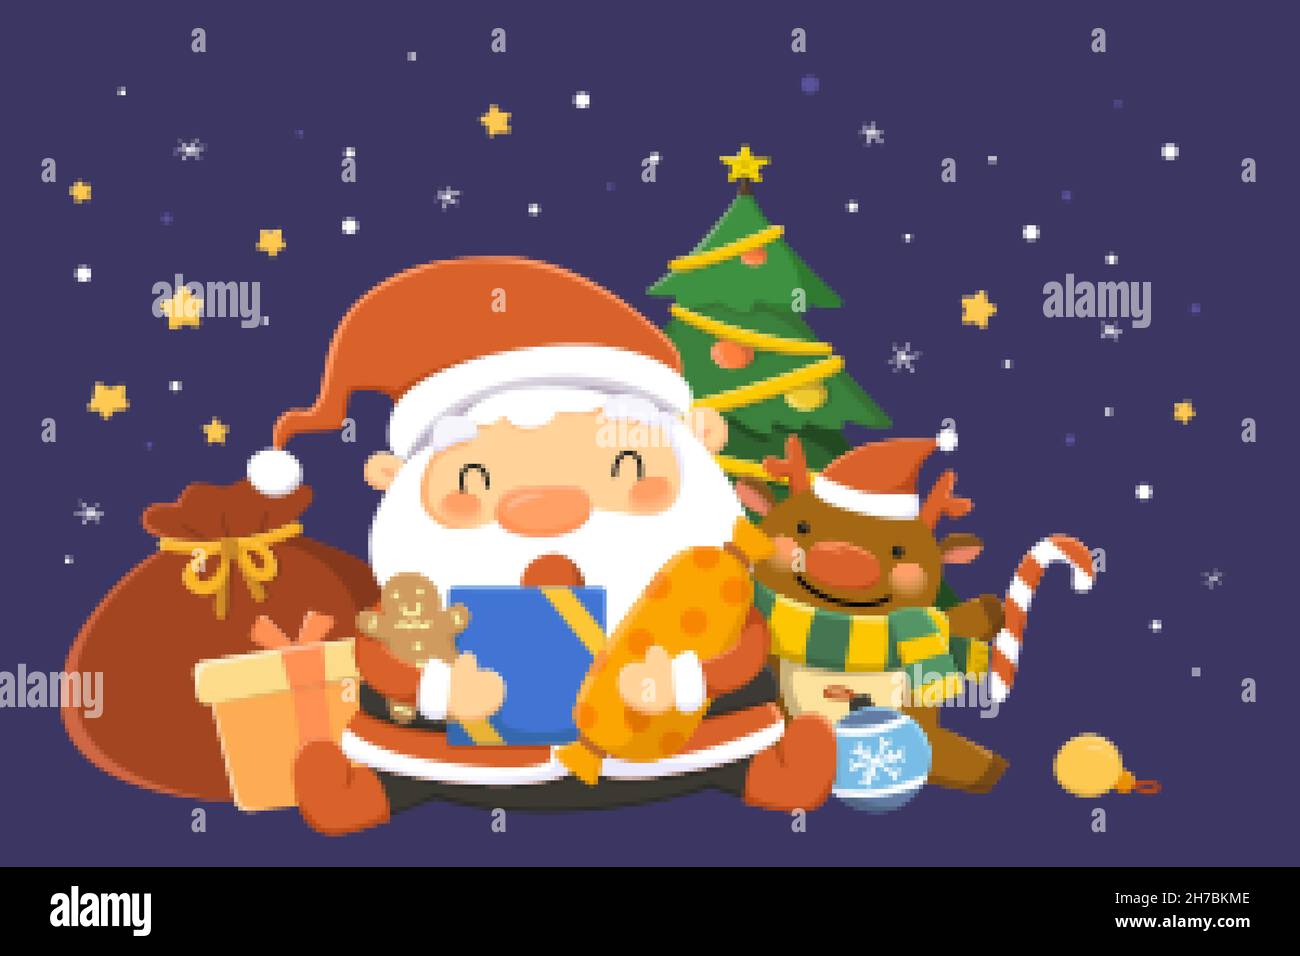 Weihnachtsmann mit Geschenken. Flache Illustration von Santa Claus hält Lebkuchenmann, Geschenke und gepunktete eingewickelte Süßigkeiten als Empfang Urlaub Überraschungen Stock Vektor